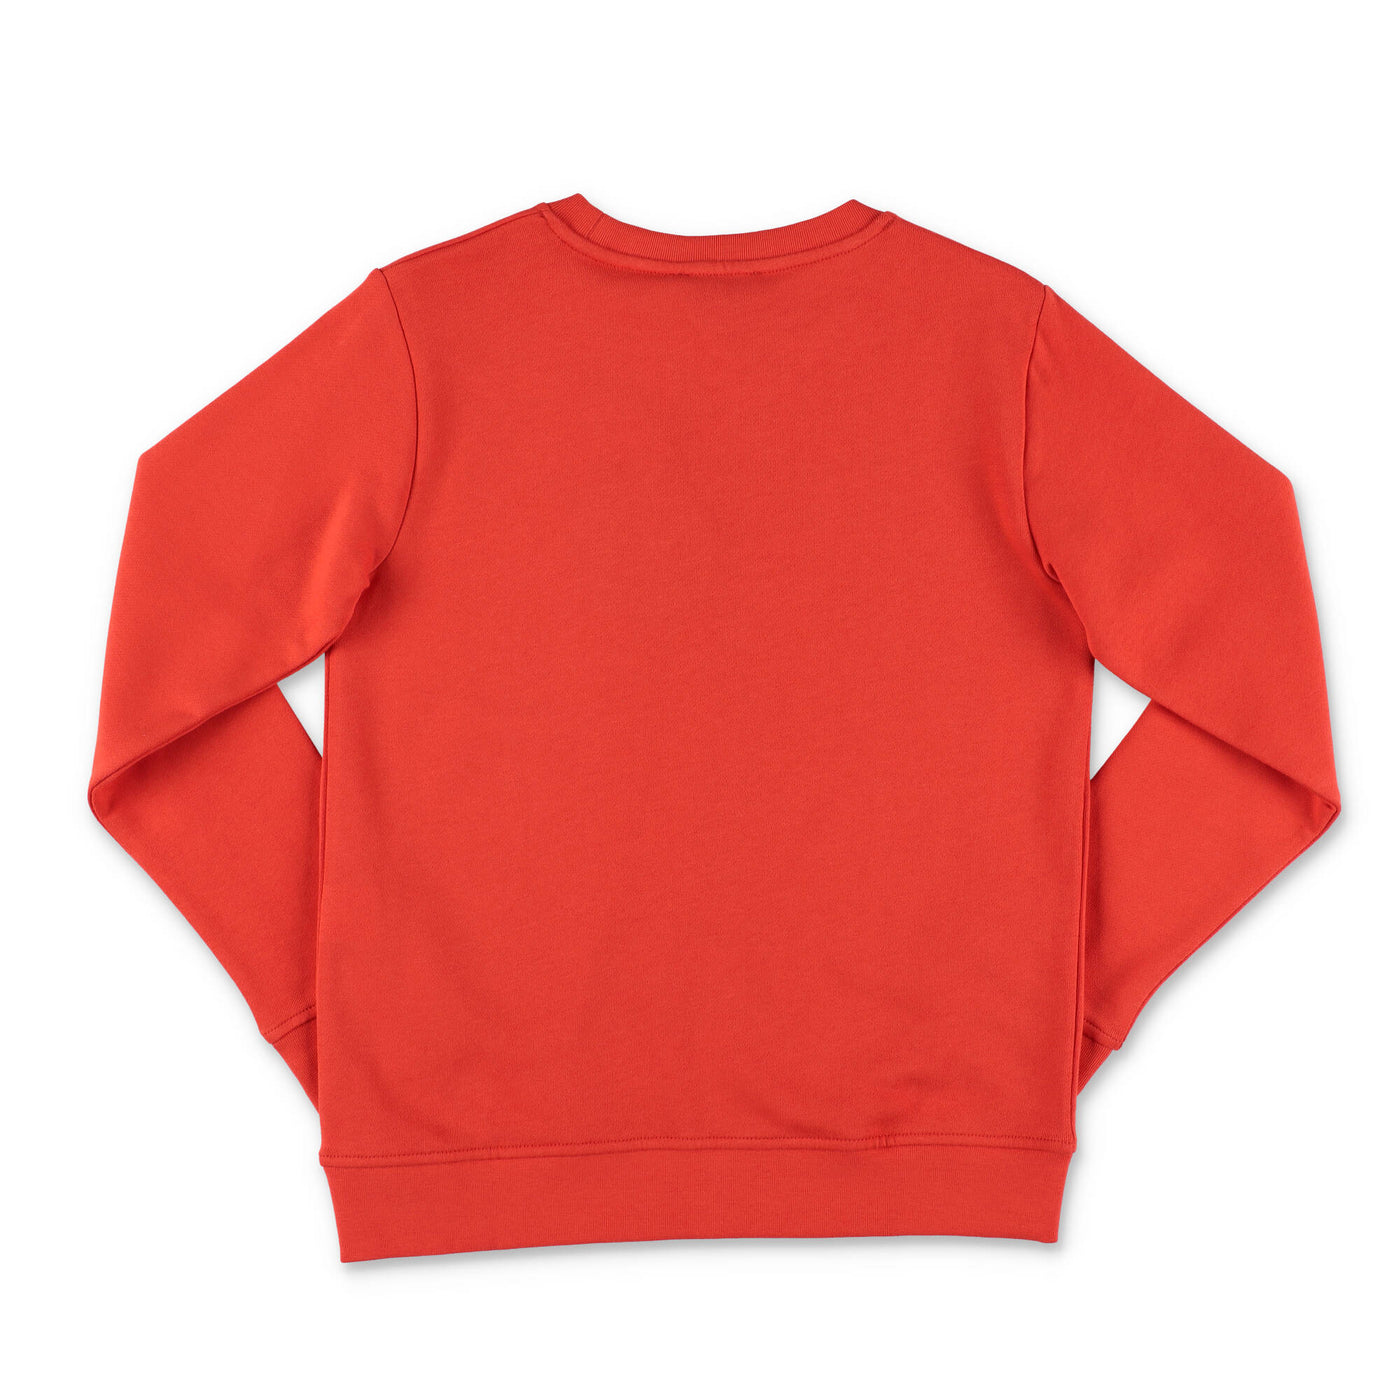 Red cotton boy STELLA McCARTNEY sweatshirt